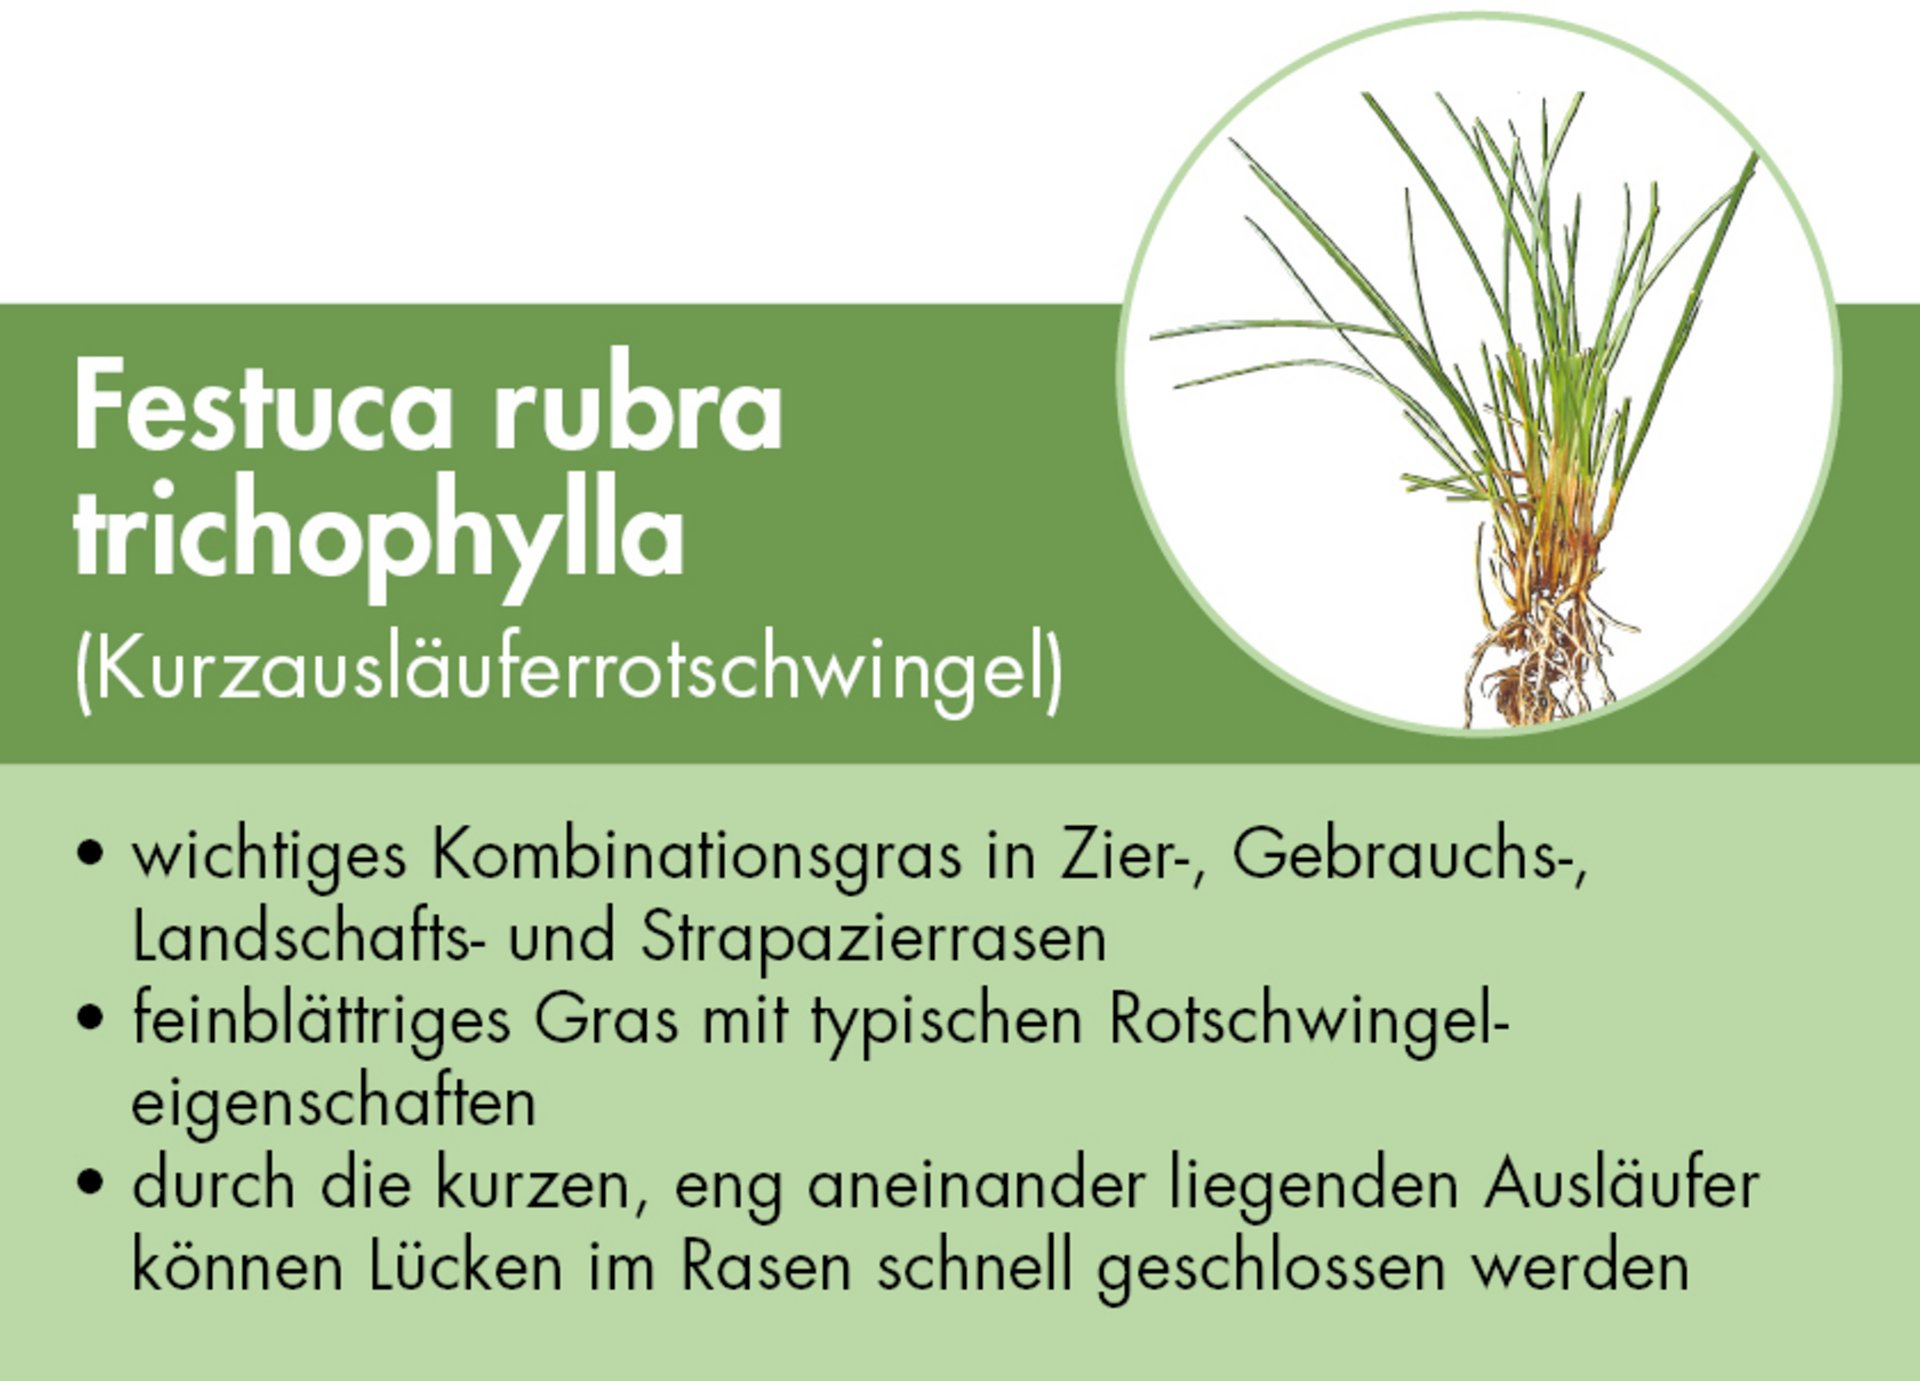 Festuca rubra trichophylla - Kurzausläuferrotschwingel